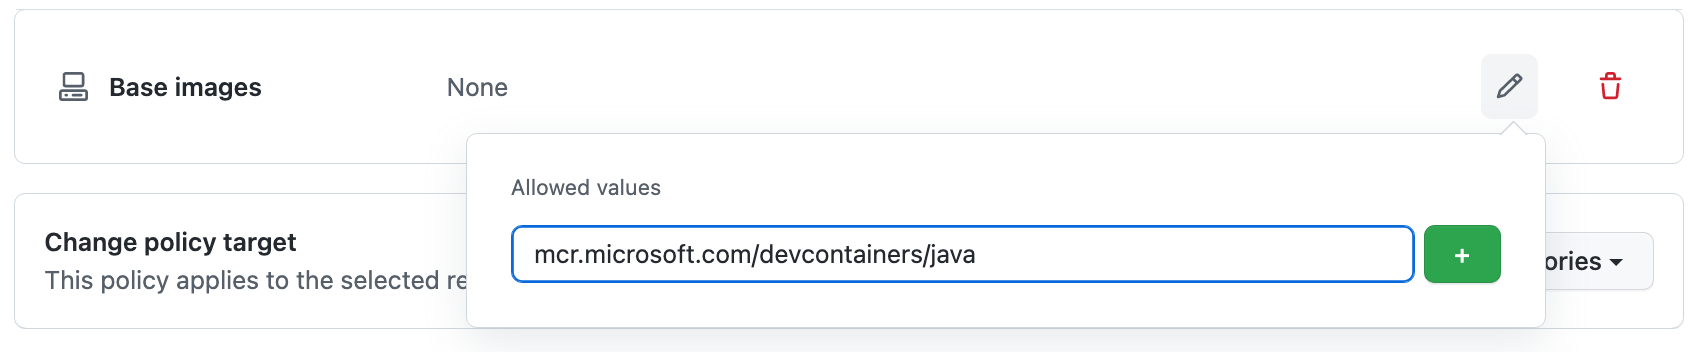 在“允许的值”字段中输入的 URL“mcr.microsoft.com/vscode/devcontainers/java”的屏幕截图。